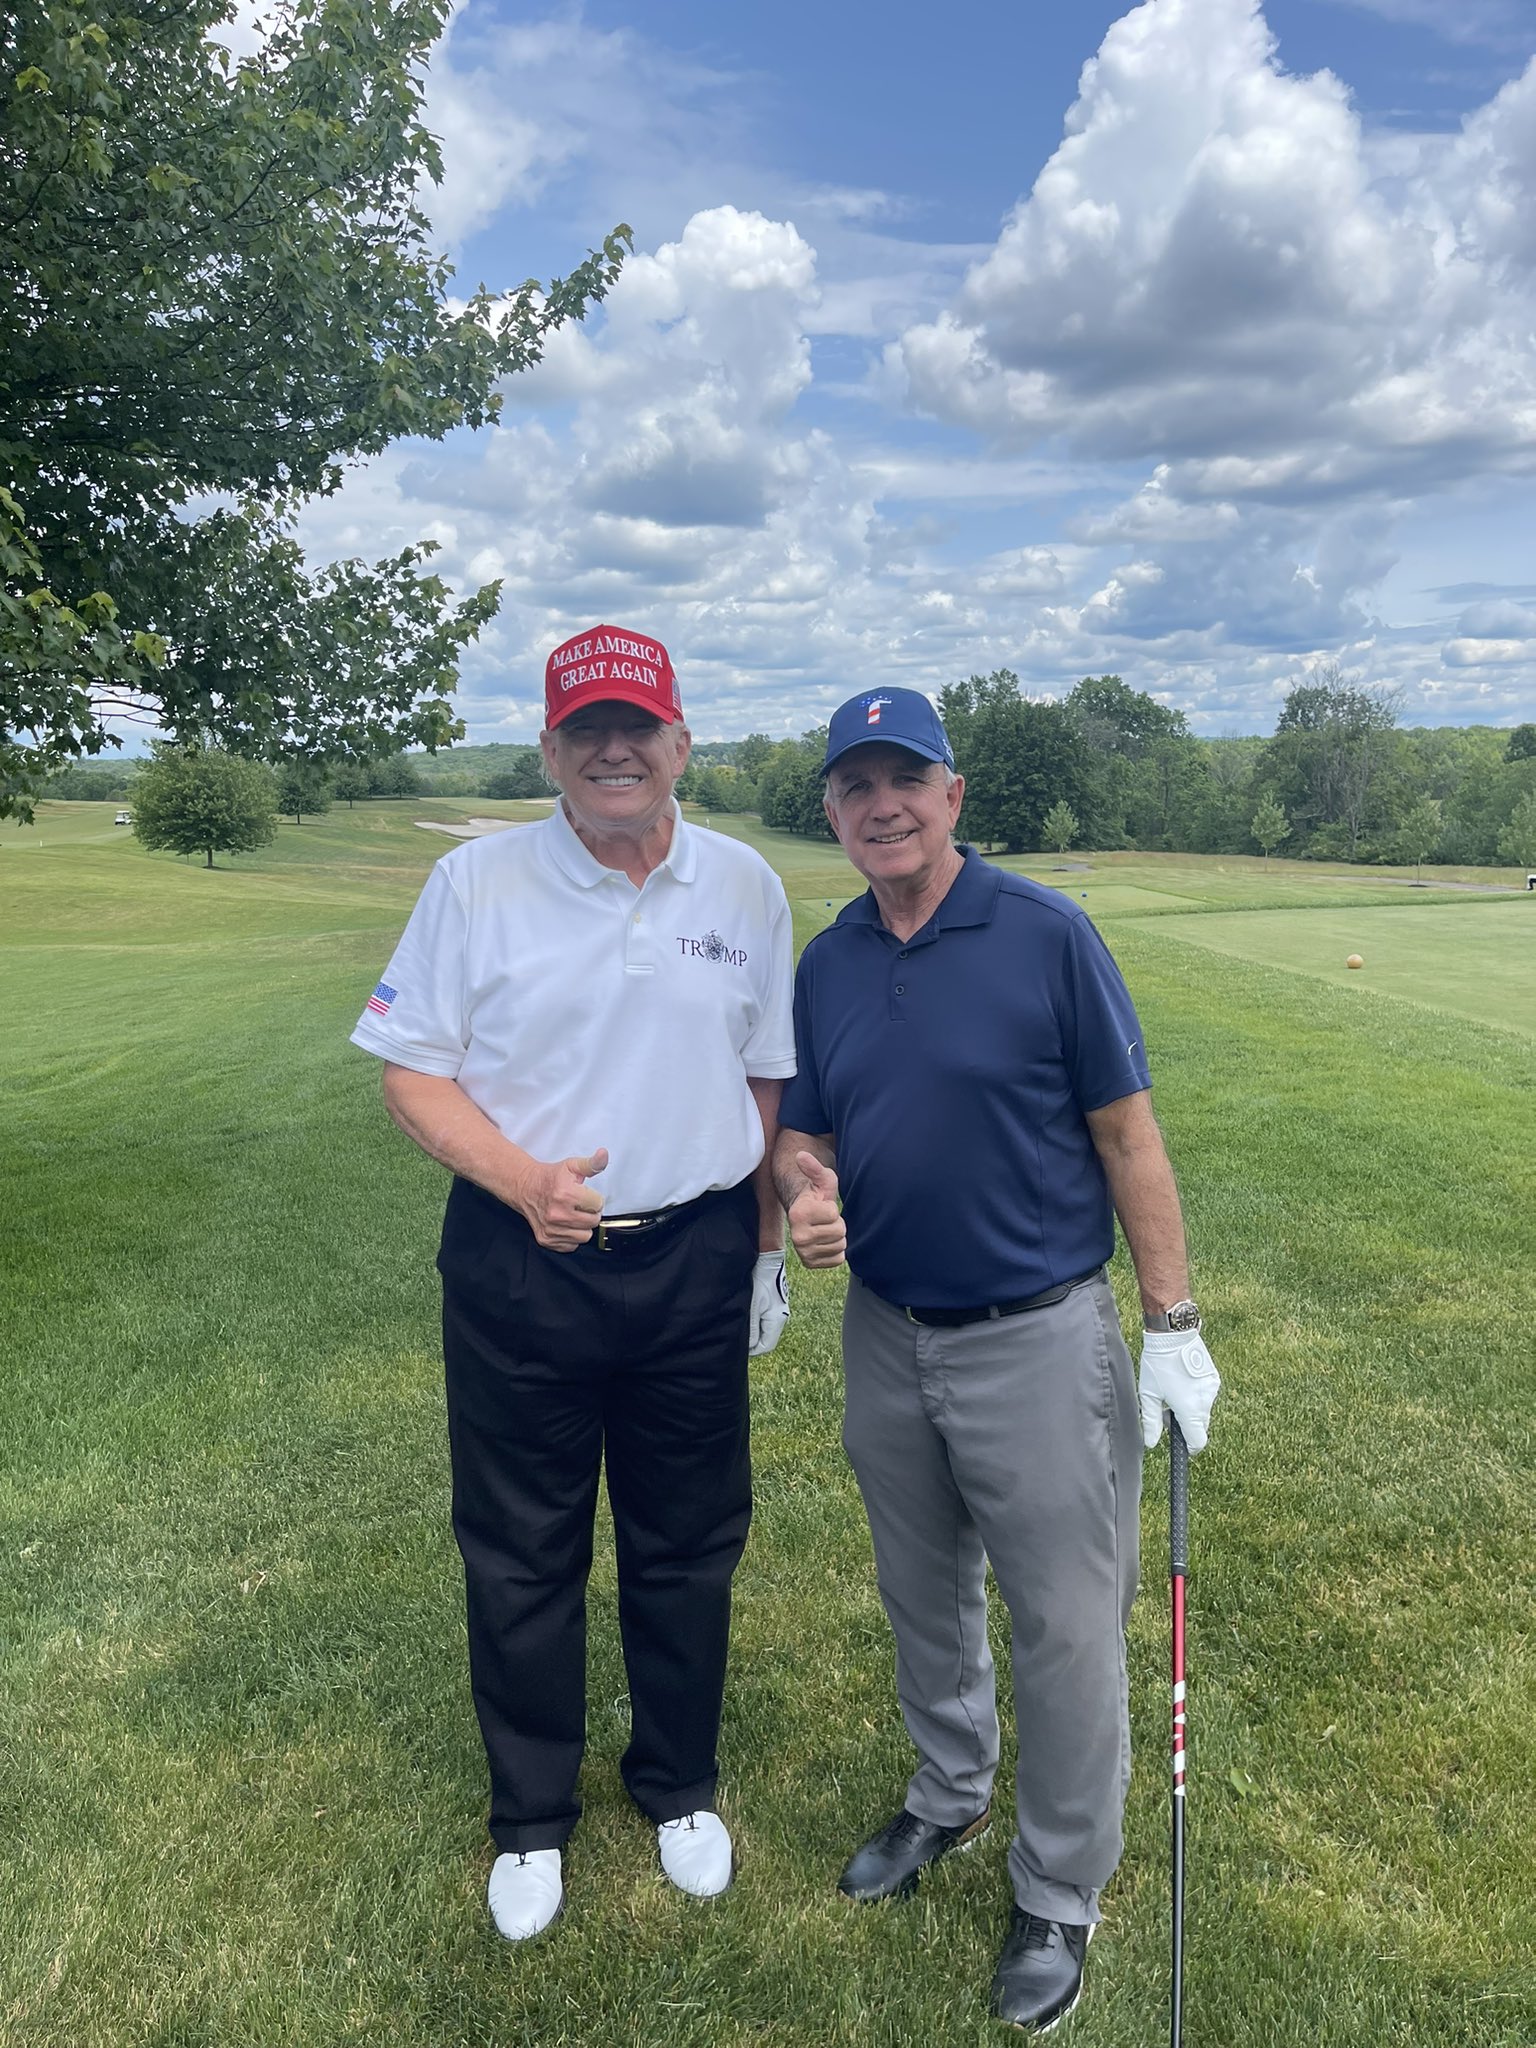 共和党籍众议员卡洛斯·希门吉斯当地时间9日发推称，他当天与特朗普在新泽西州高尔夫俱乐部打高尔夫球。